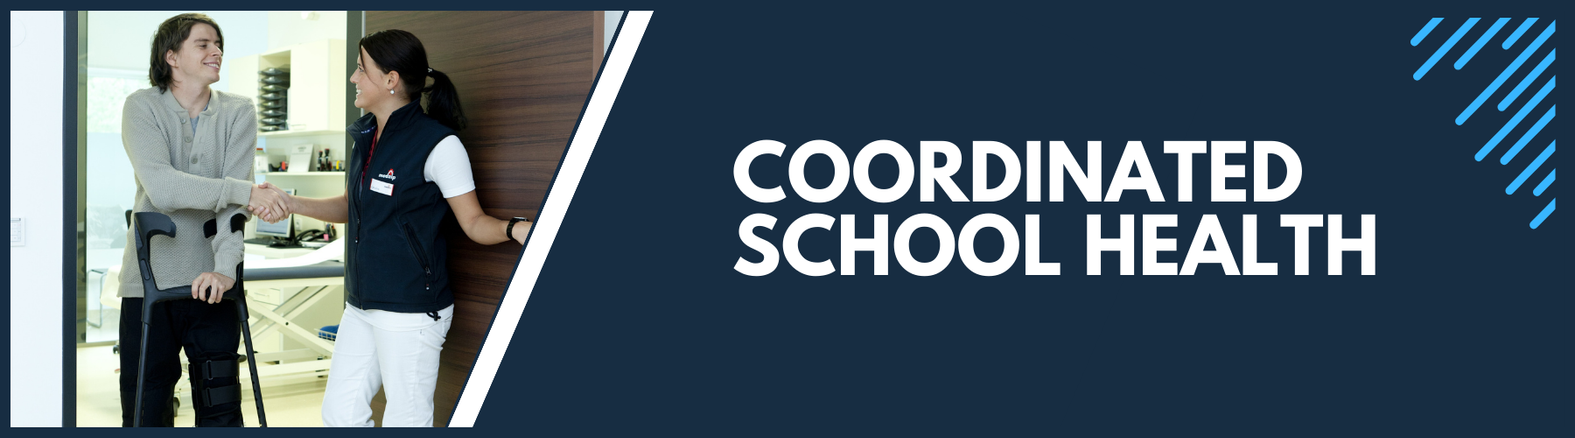 Coordinated School Health Banner